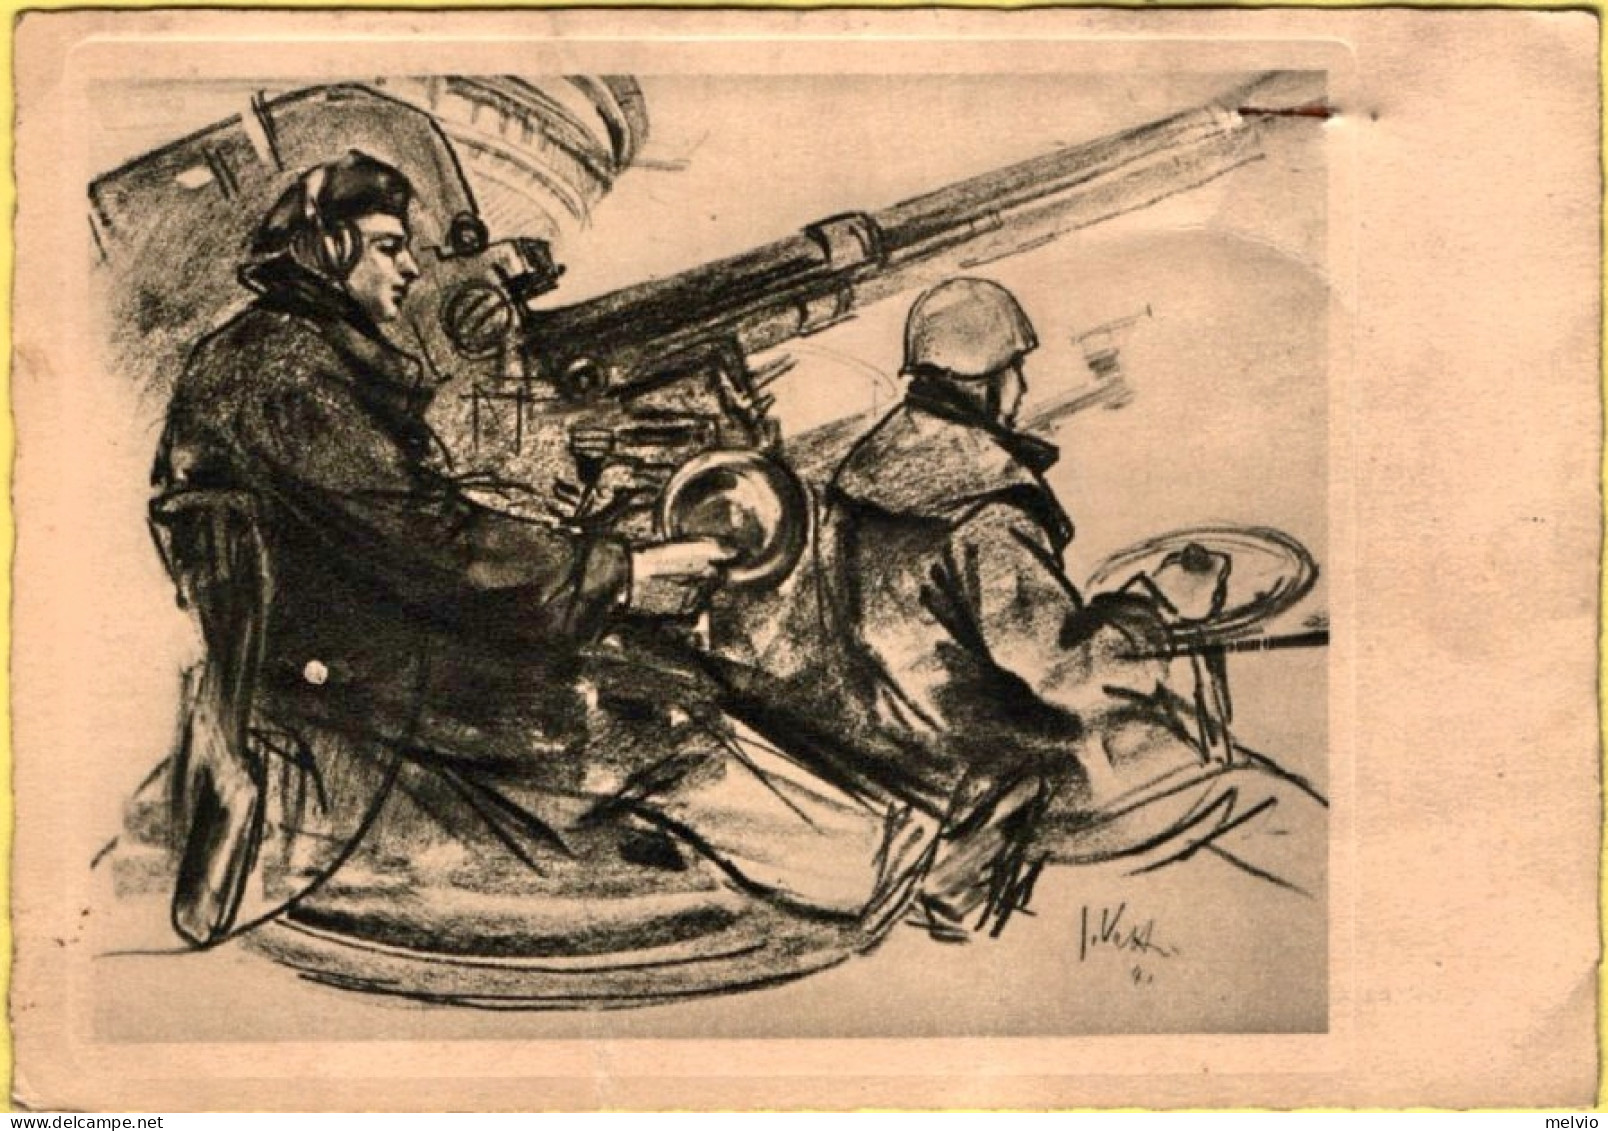 1941-Cointraerea Illustratore Vatteroni Affrancata 25c.Fratellanza D'armi Cartol - Patriotiques